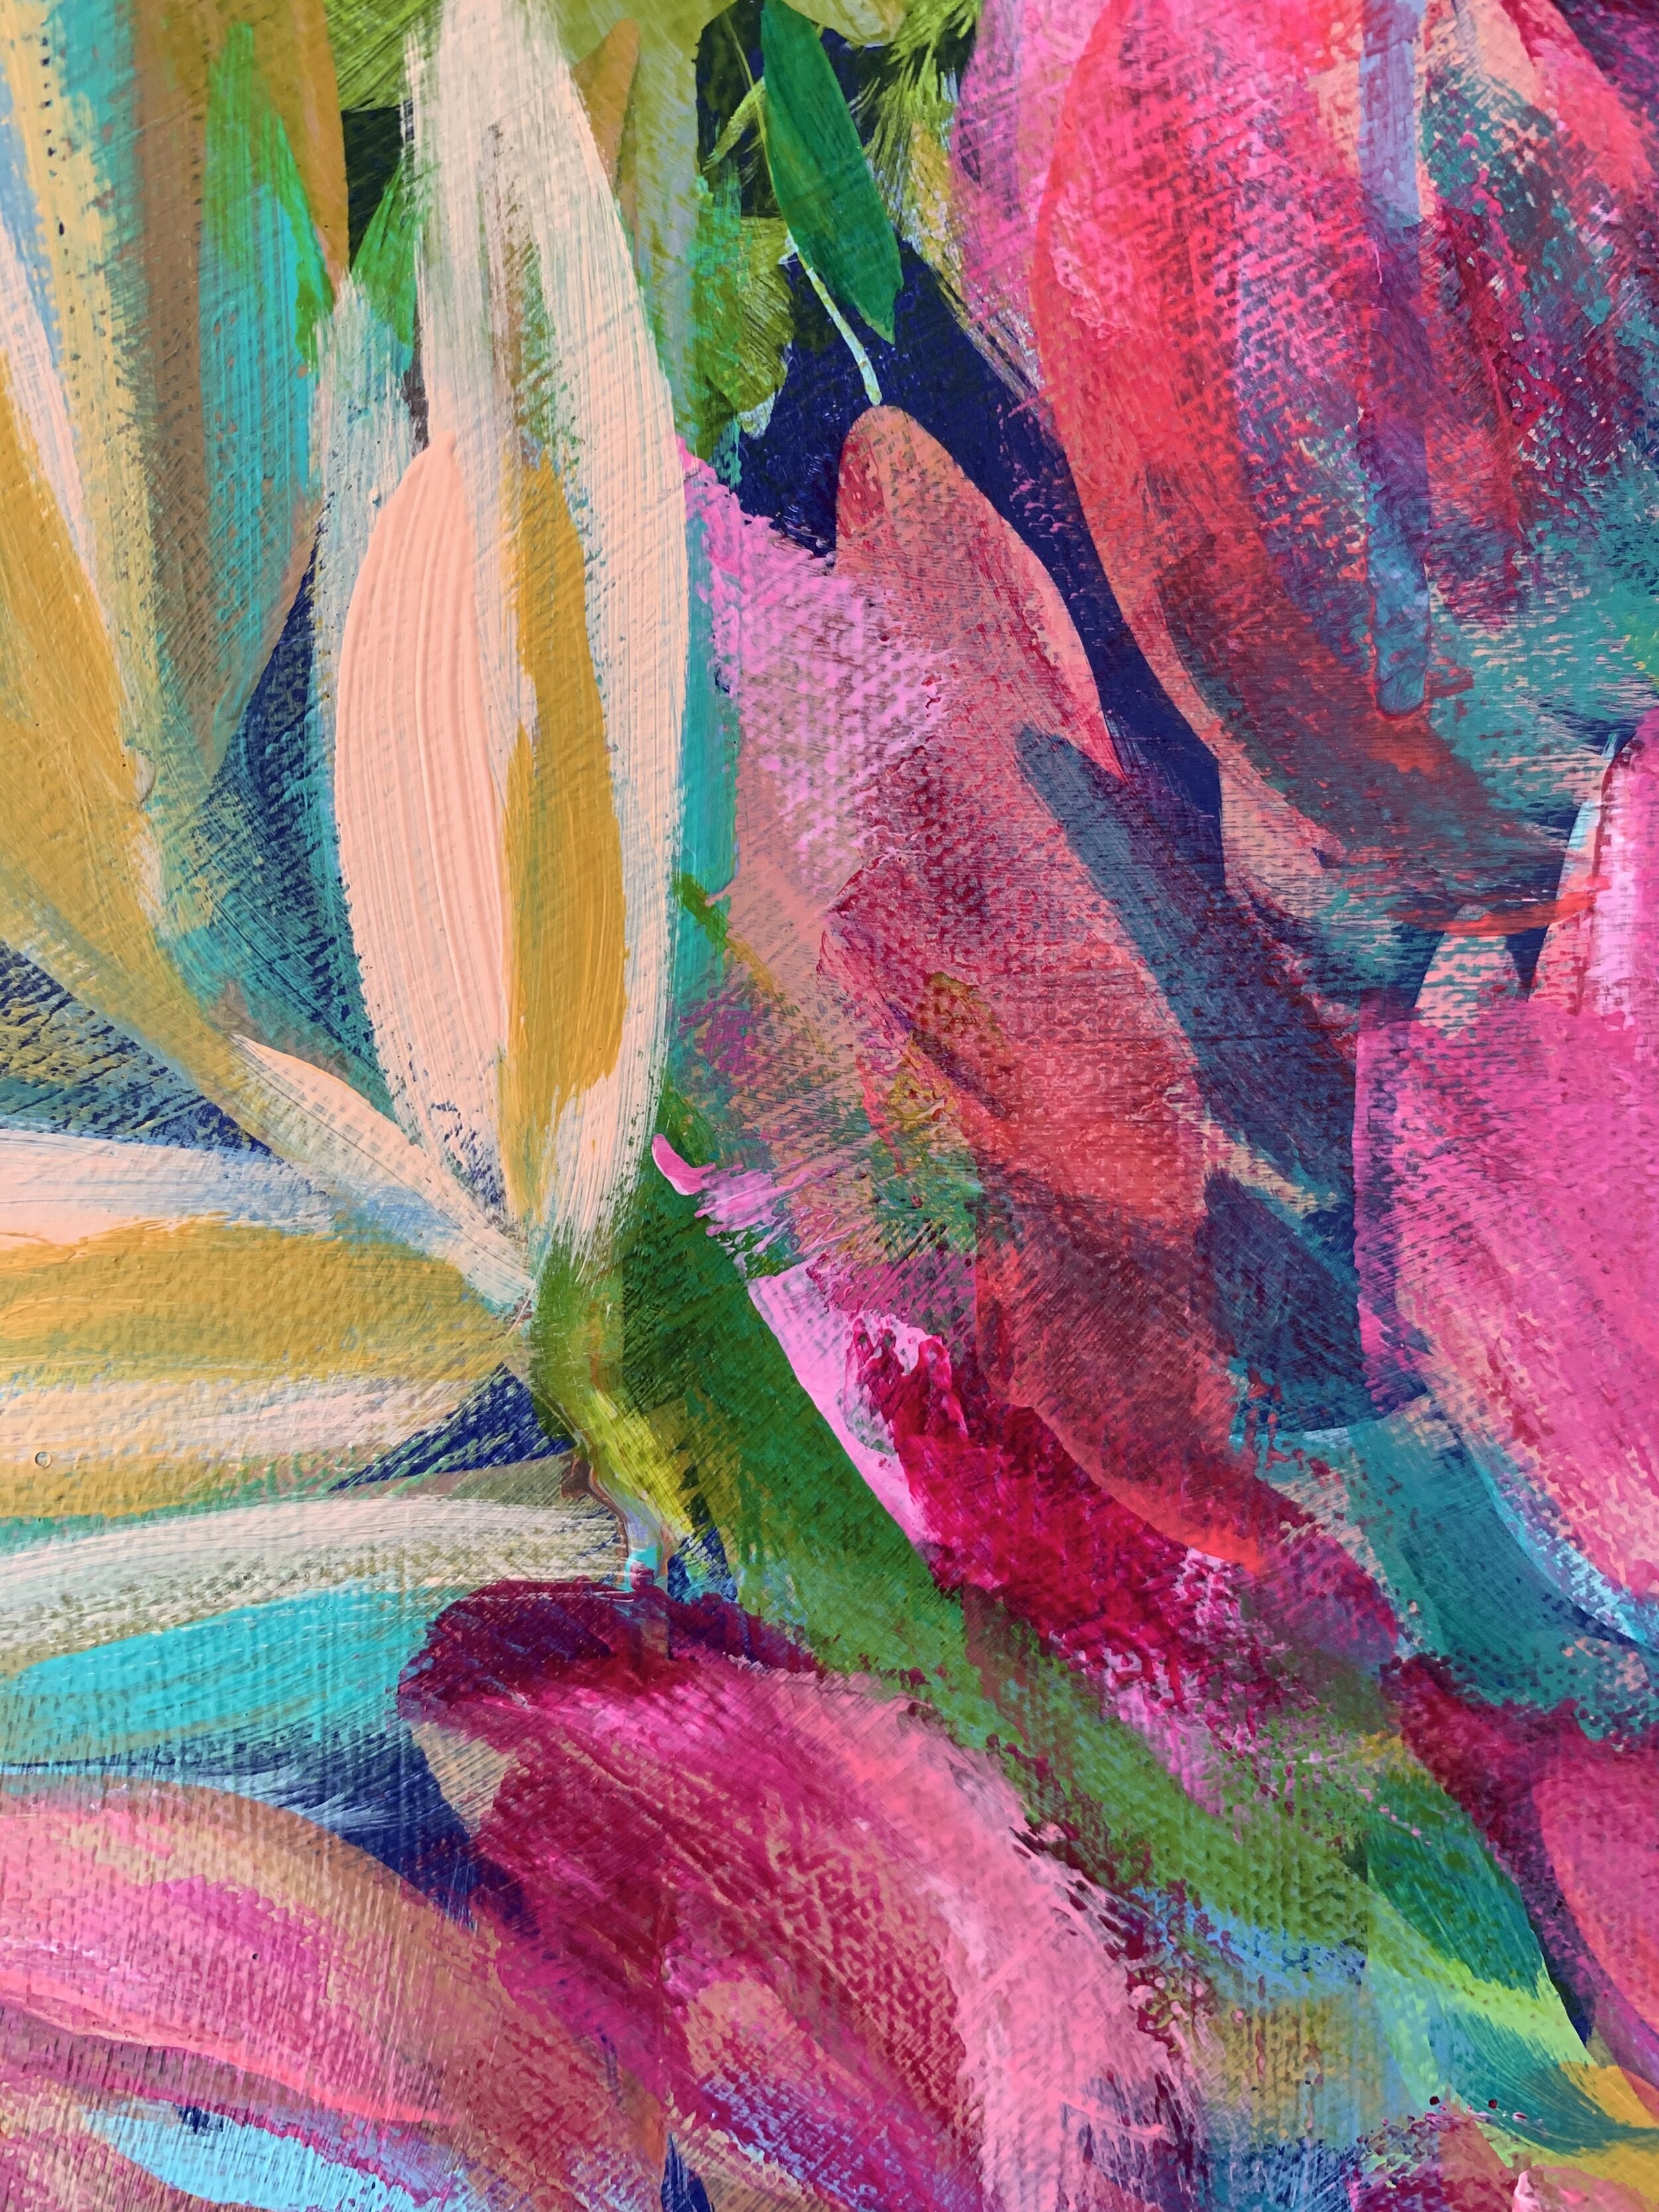 Julie-Marriott-painting-texture-pink-flower.jpeg